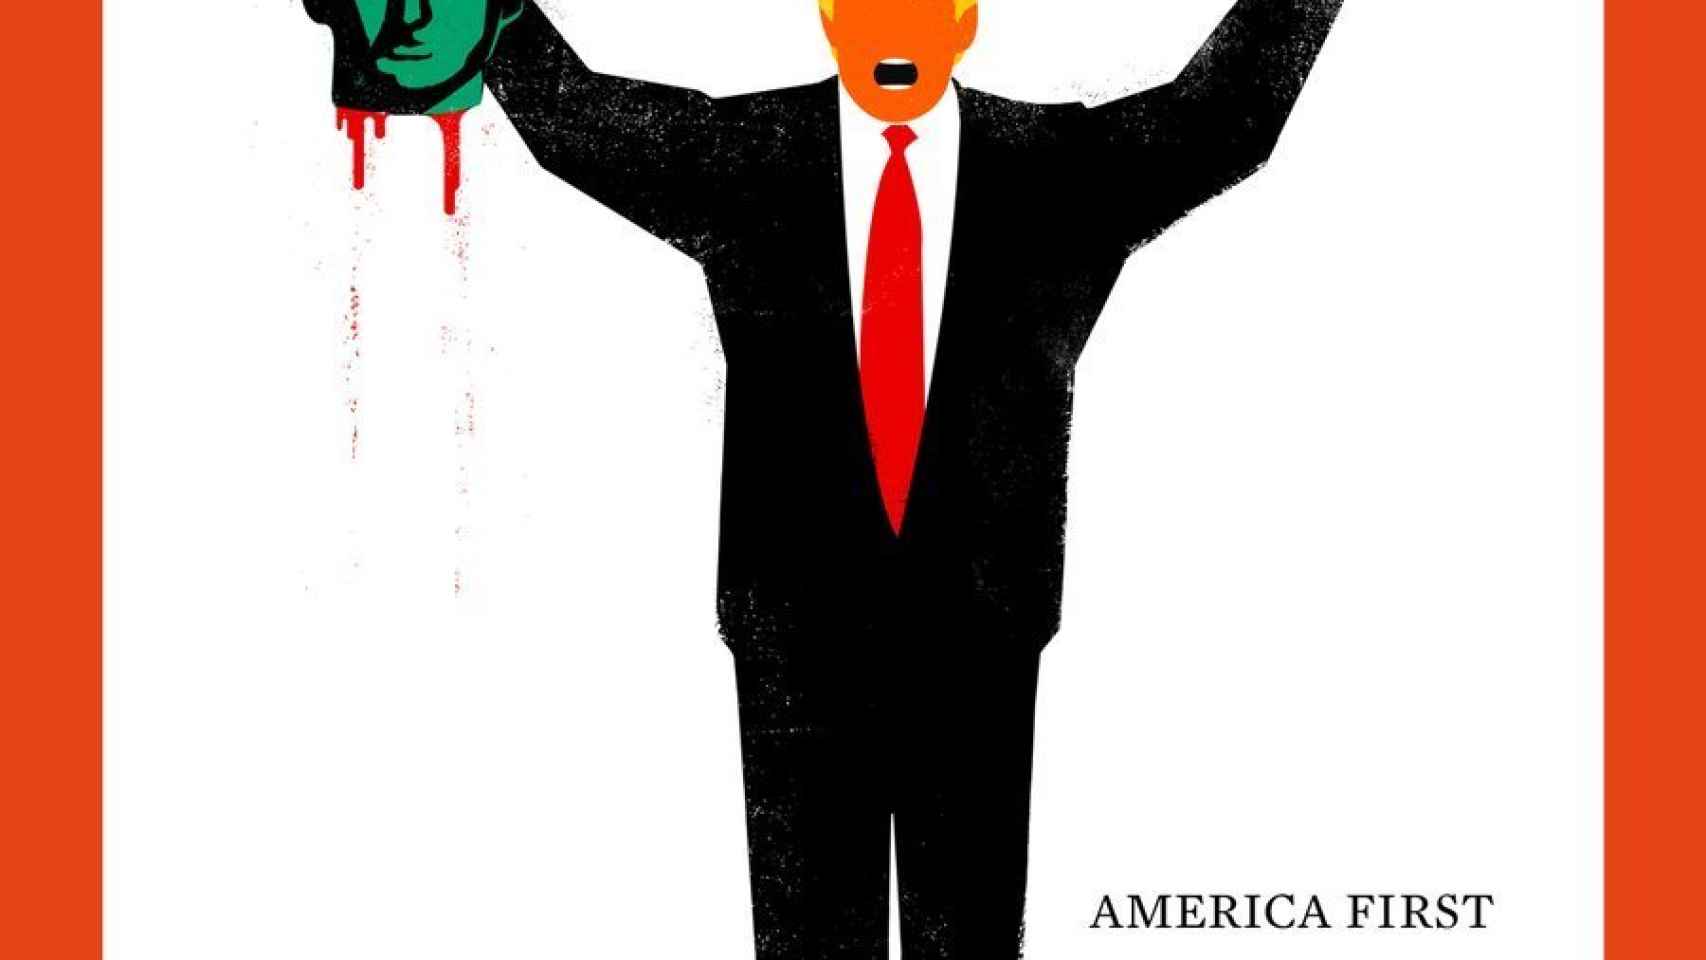 Detalle de la portada de Der Spiegel dedicada a Trump